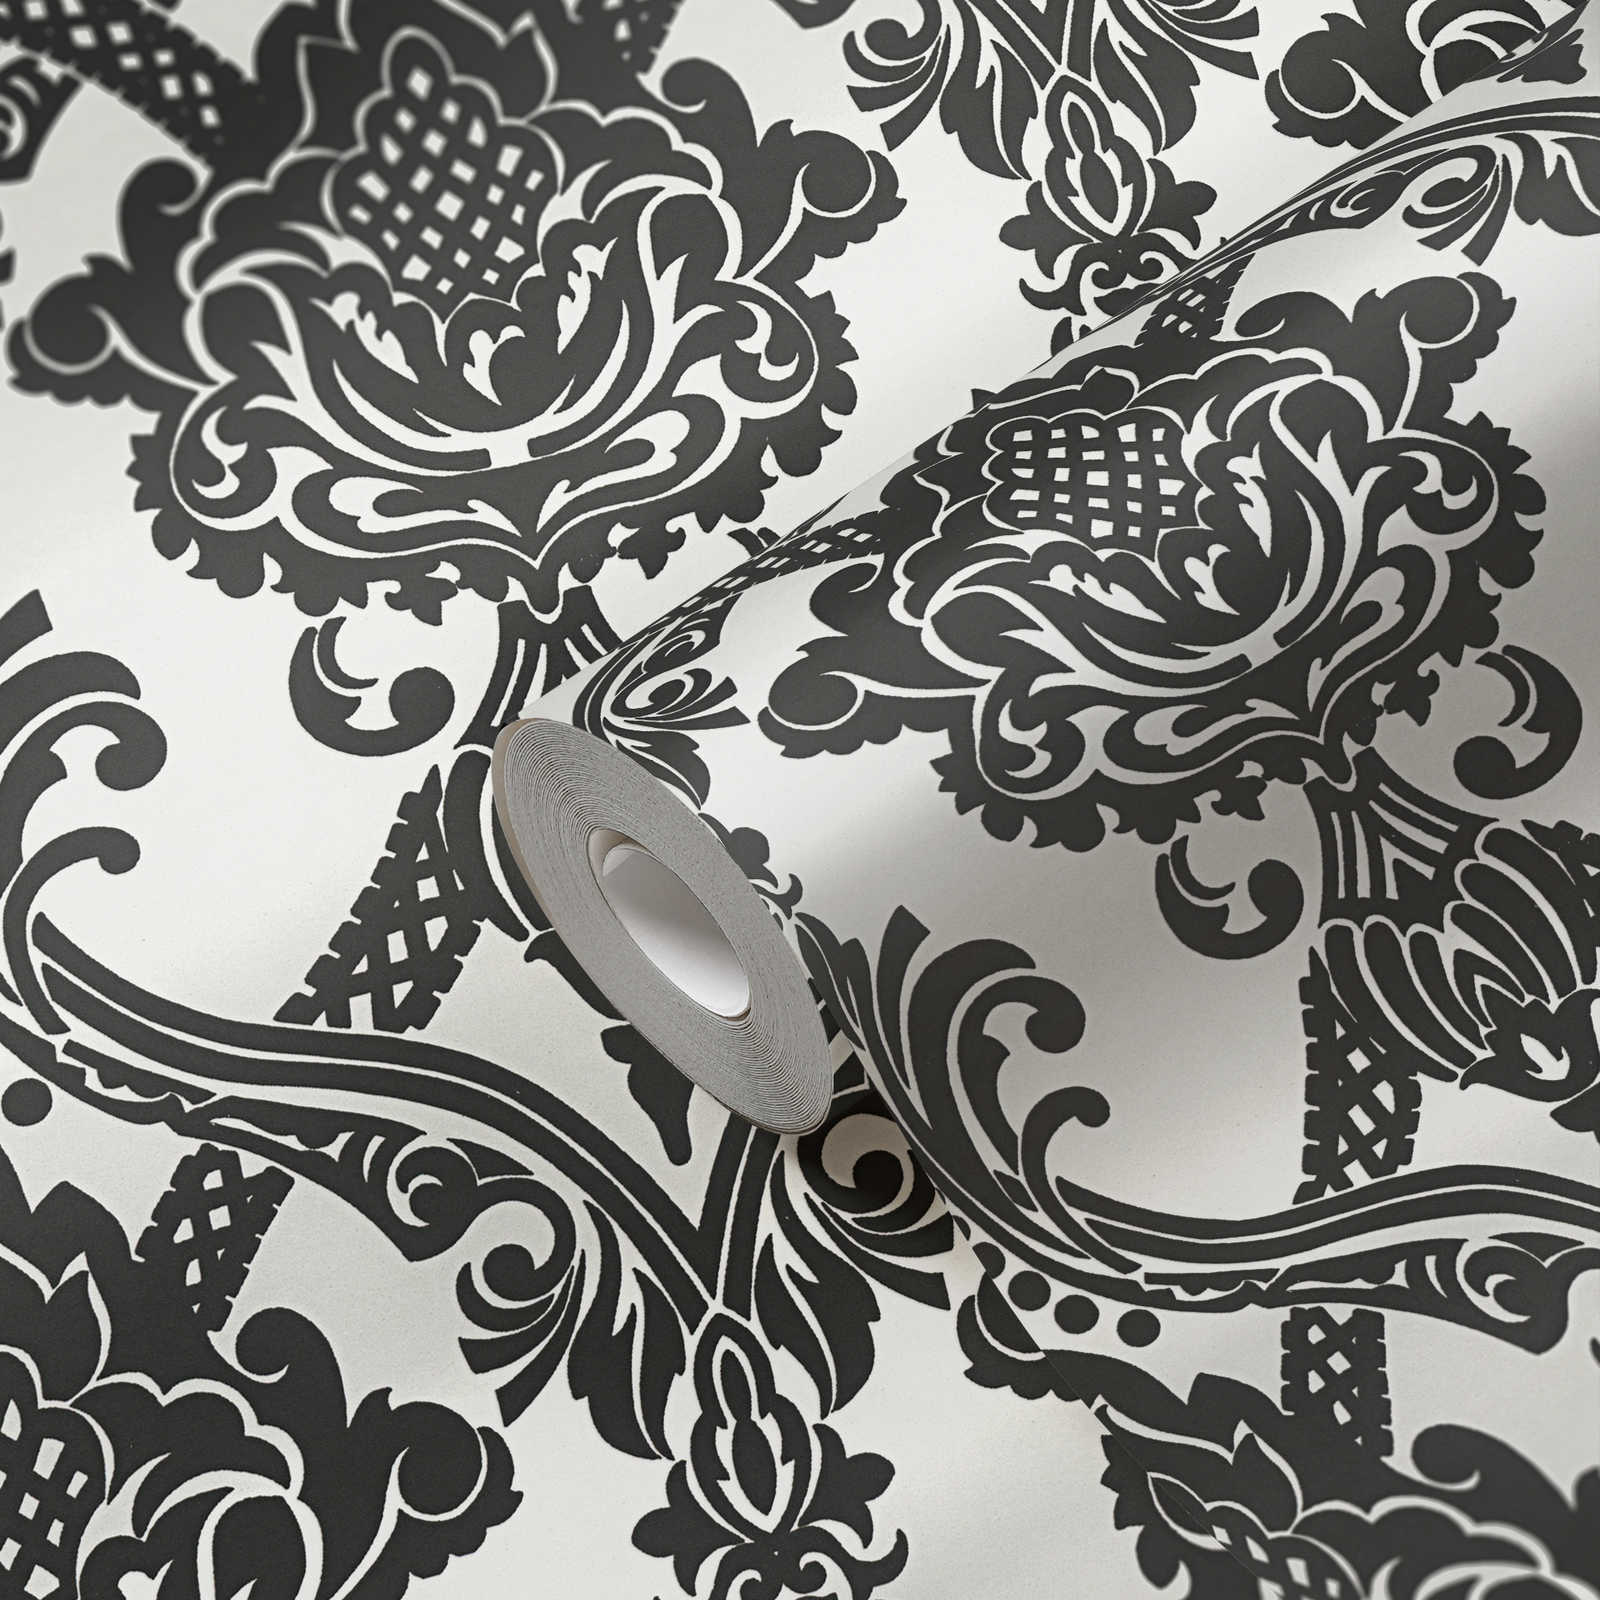             Papier peint métallique baroque motif ornemental en noir et blanc
        